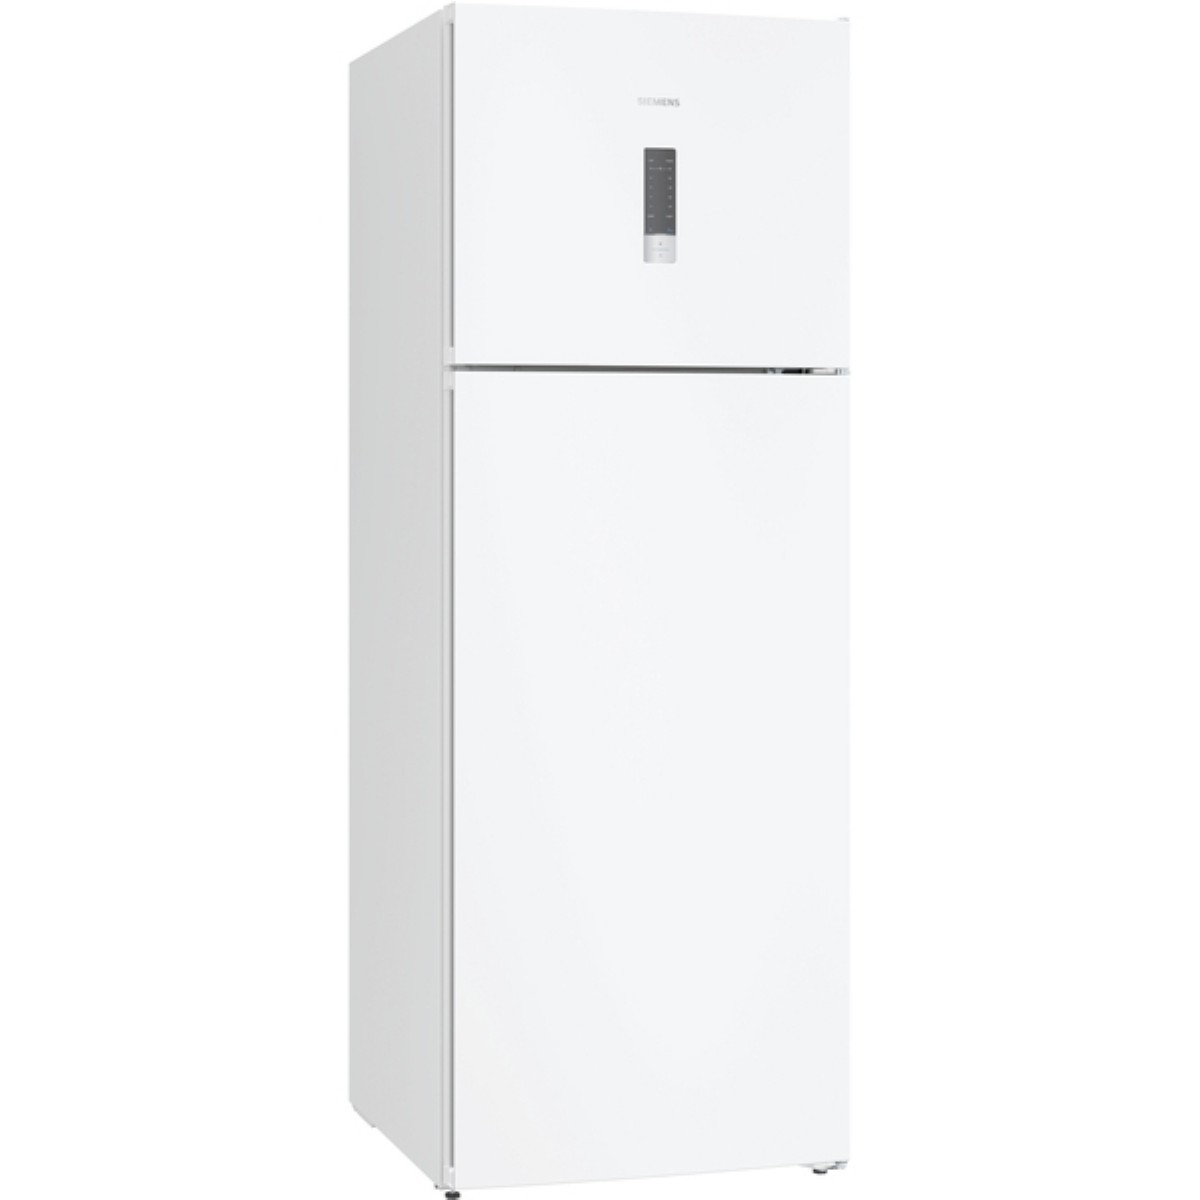 Buzdolabı | Siemens KD56NXWF1N Çift Kapılı No Frost Buzdolabı | KD56NXWF1N | KD56NXWF1N, Siemens KD56NXWF1N Çift Kapılı No Frost Buzdolabı, Siemens 500 litre buzdolabı | 